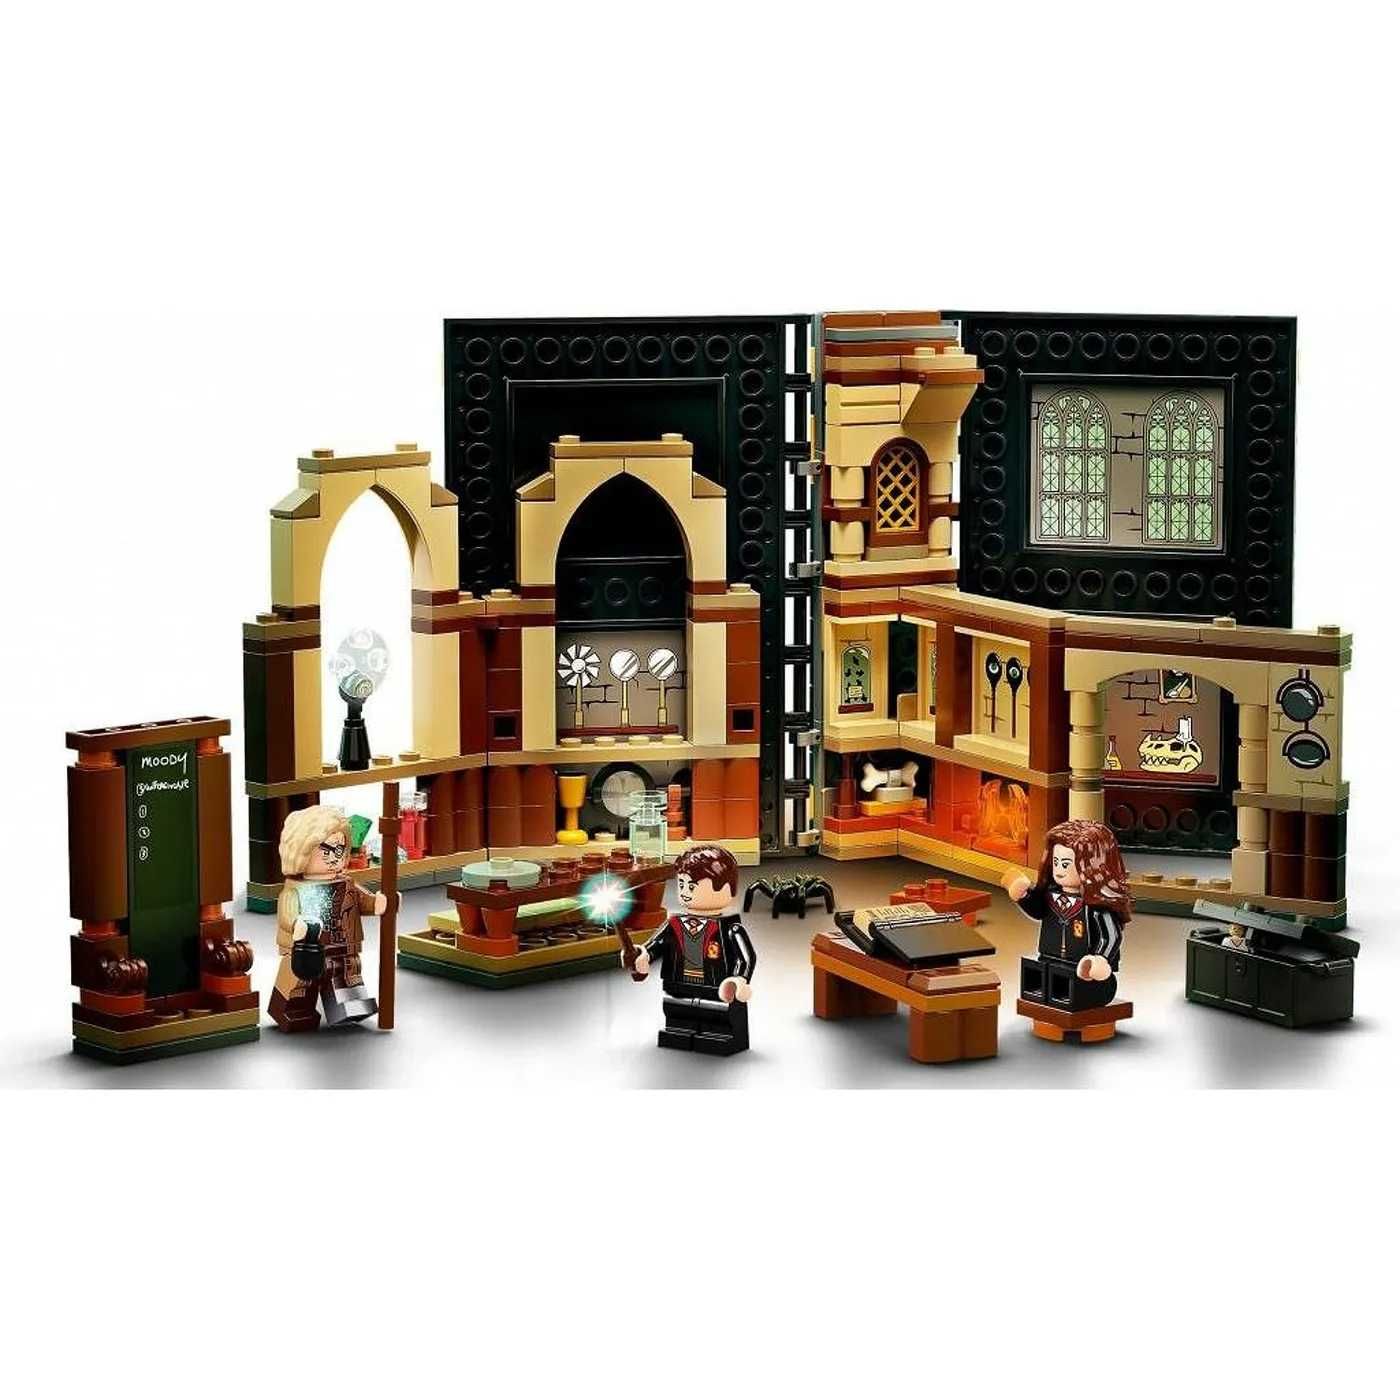 LEGO 76397 Harry Potter Учёба в Хогвартсе Урок защиты